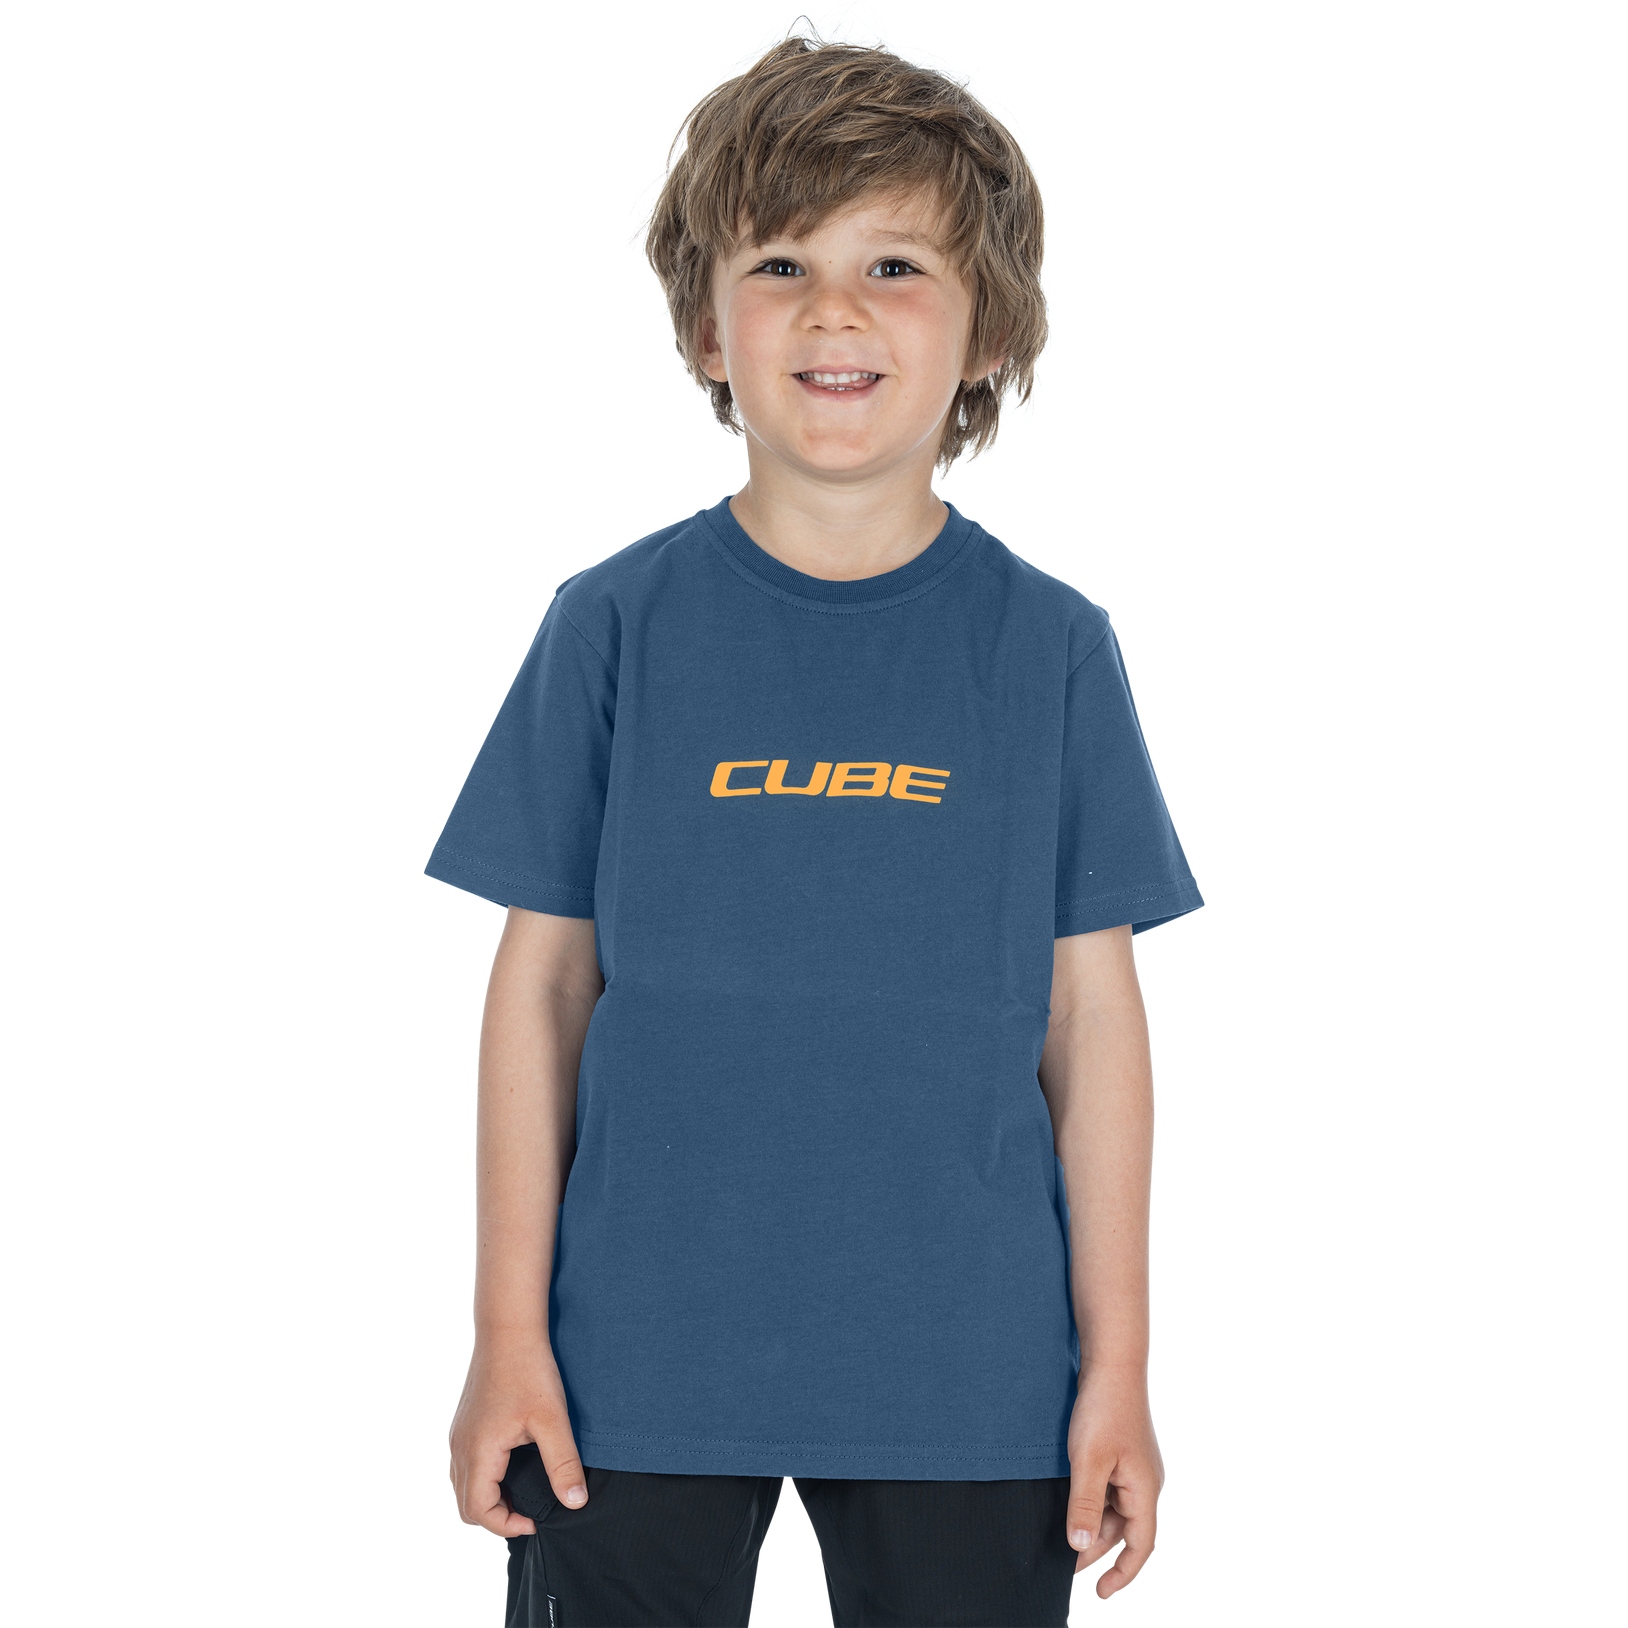 Produktbild von CUBE Organic Mountains T-Shirt Kinder - blau